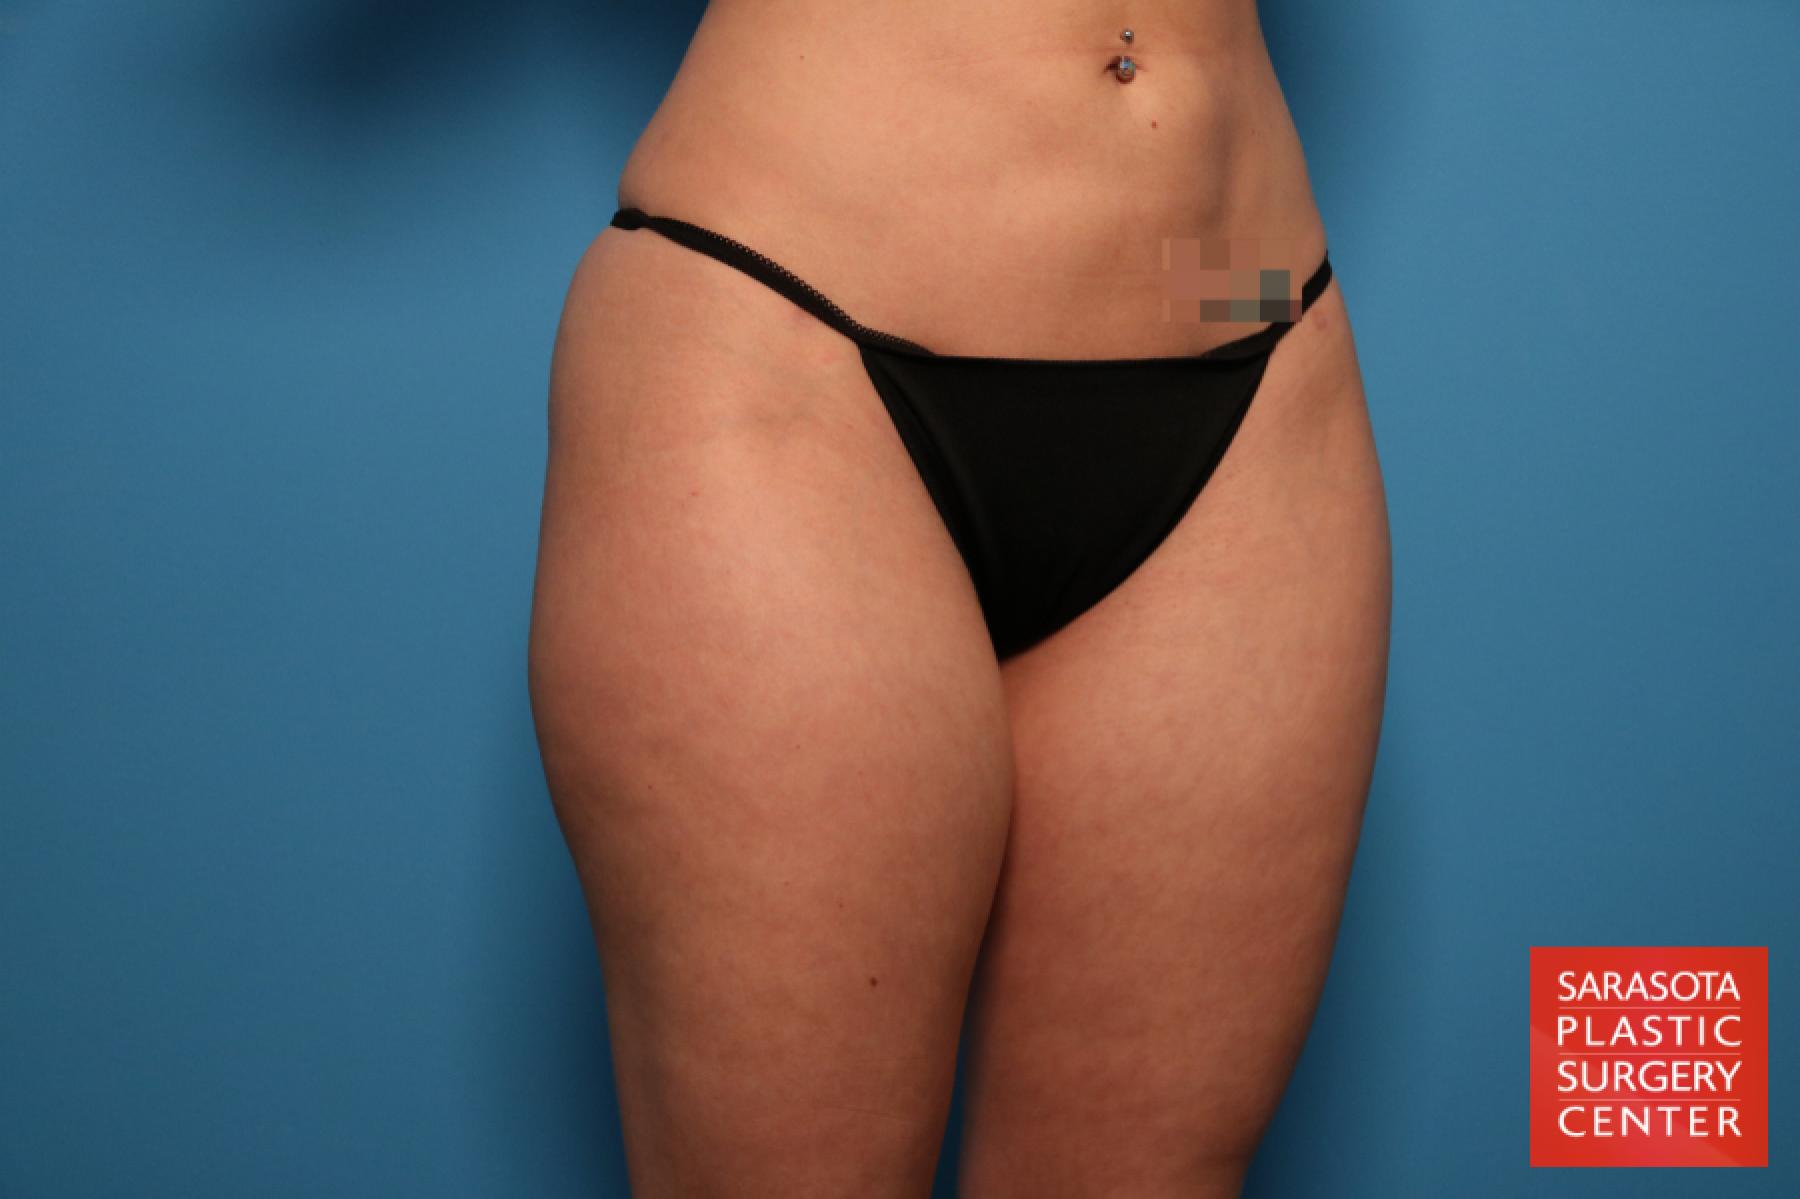 Liposuction: Patient 5 - Before 3